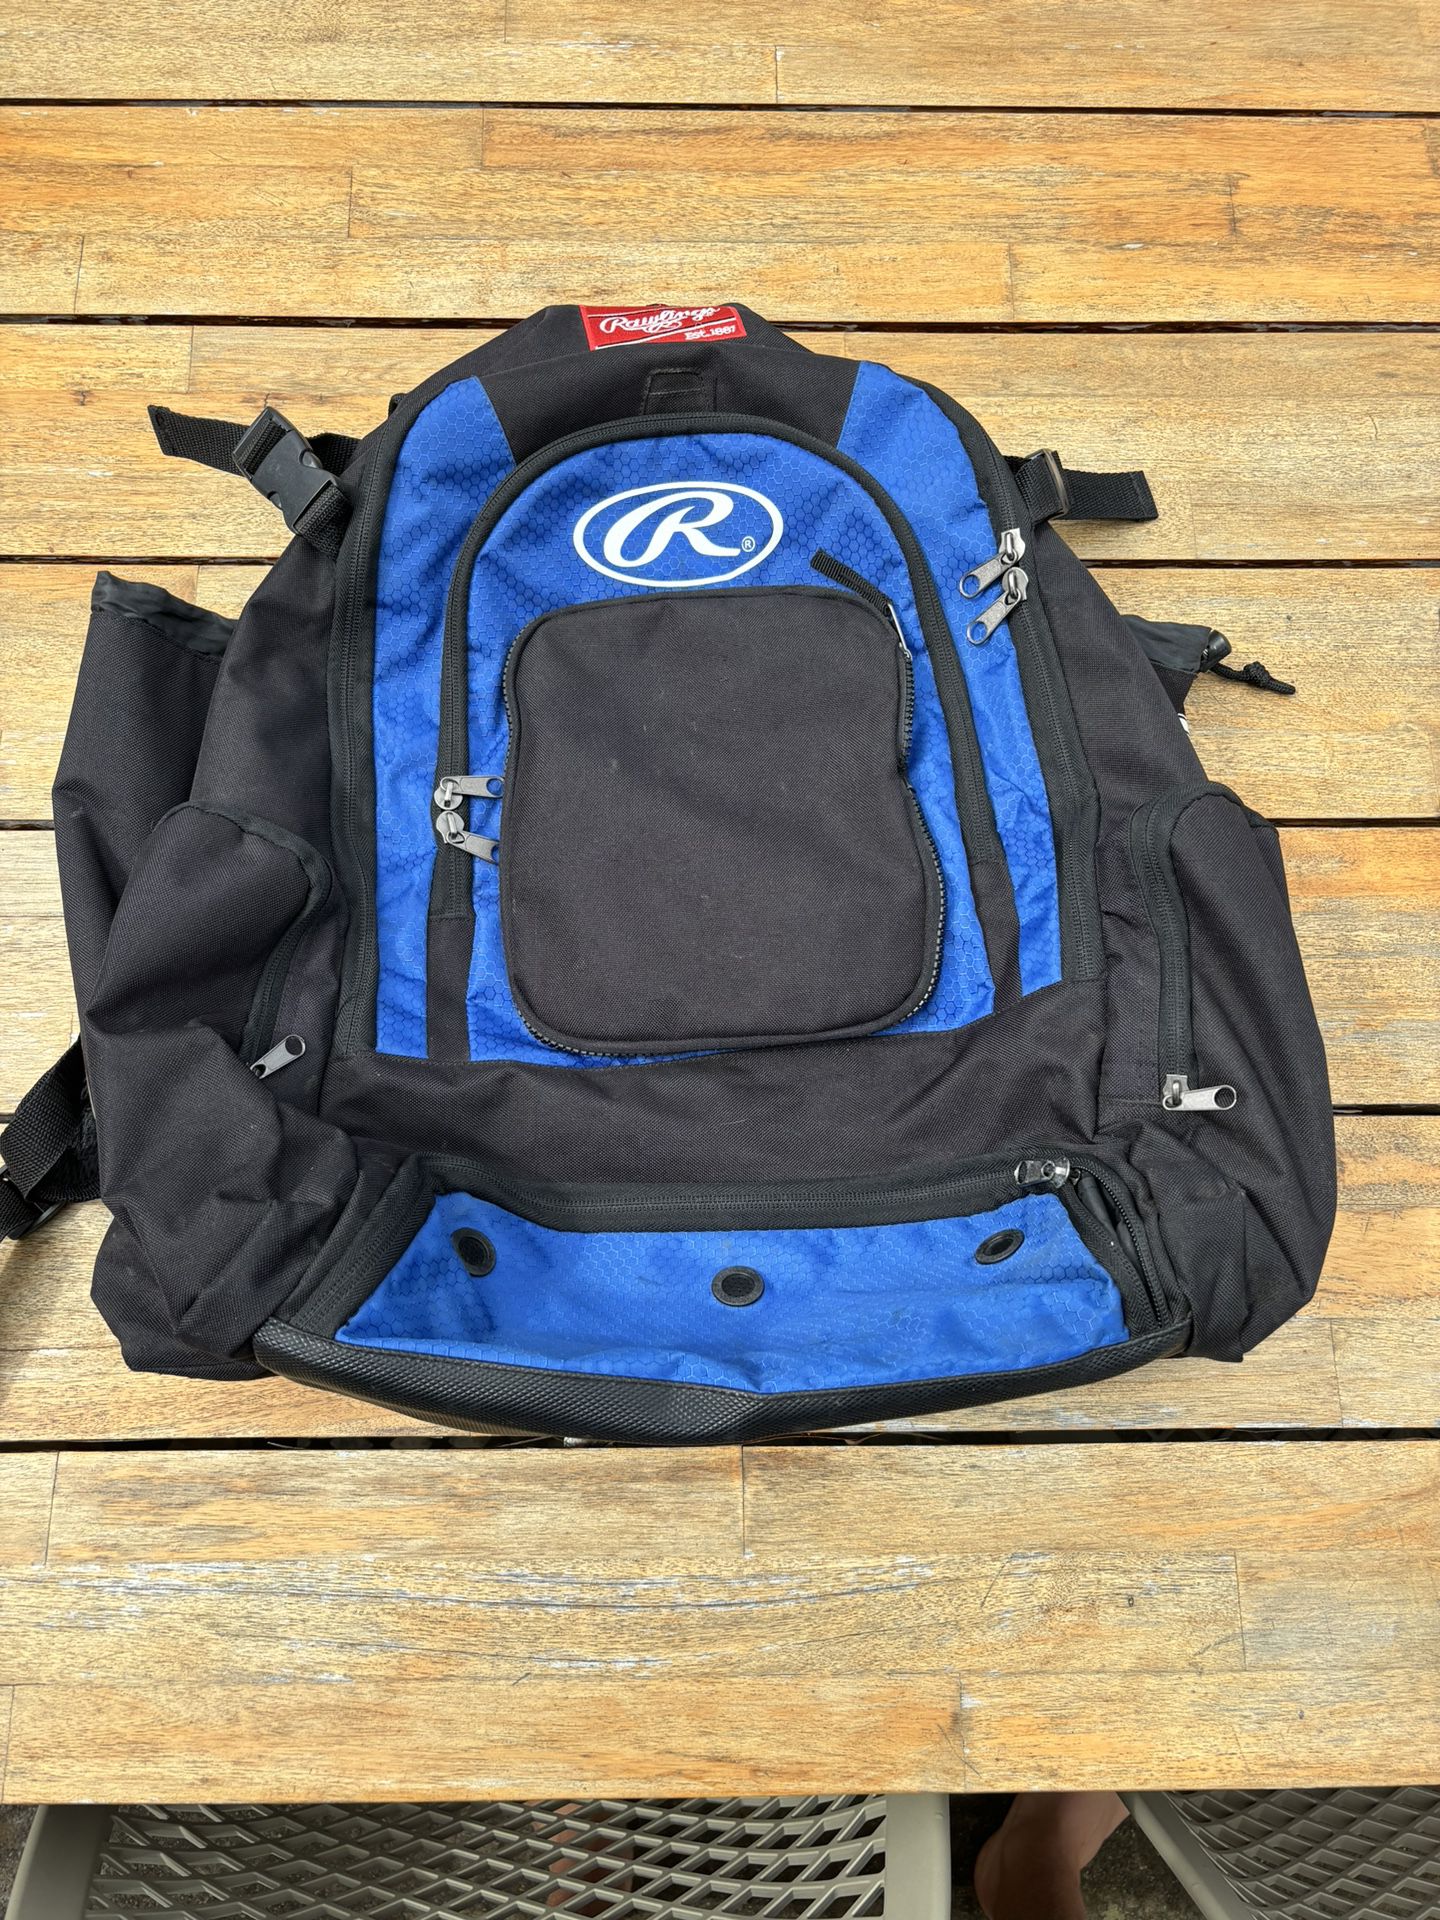 Blue Rawlings Baseball Backpack